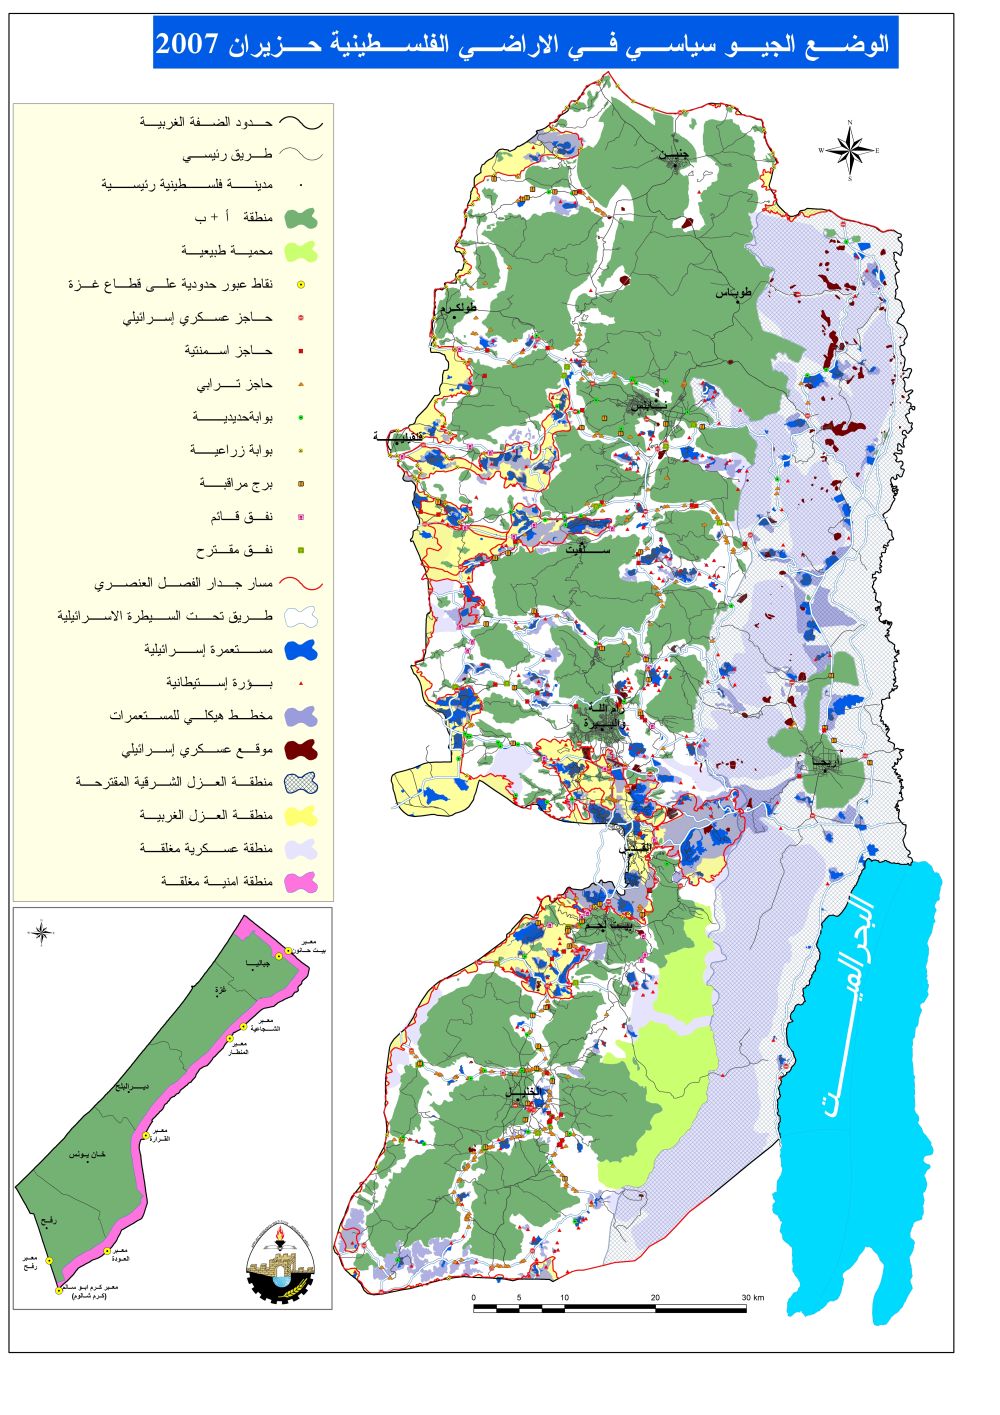 كيف تكون الضفة الغربية محتلة وهناك فلسطينيون يعيشون في الضفة الغربية؟